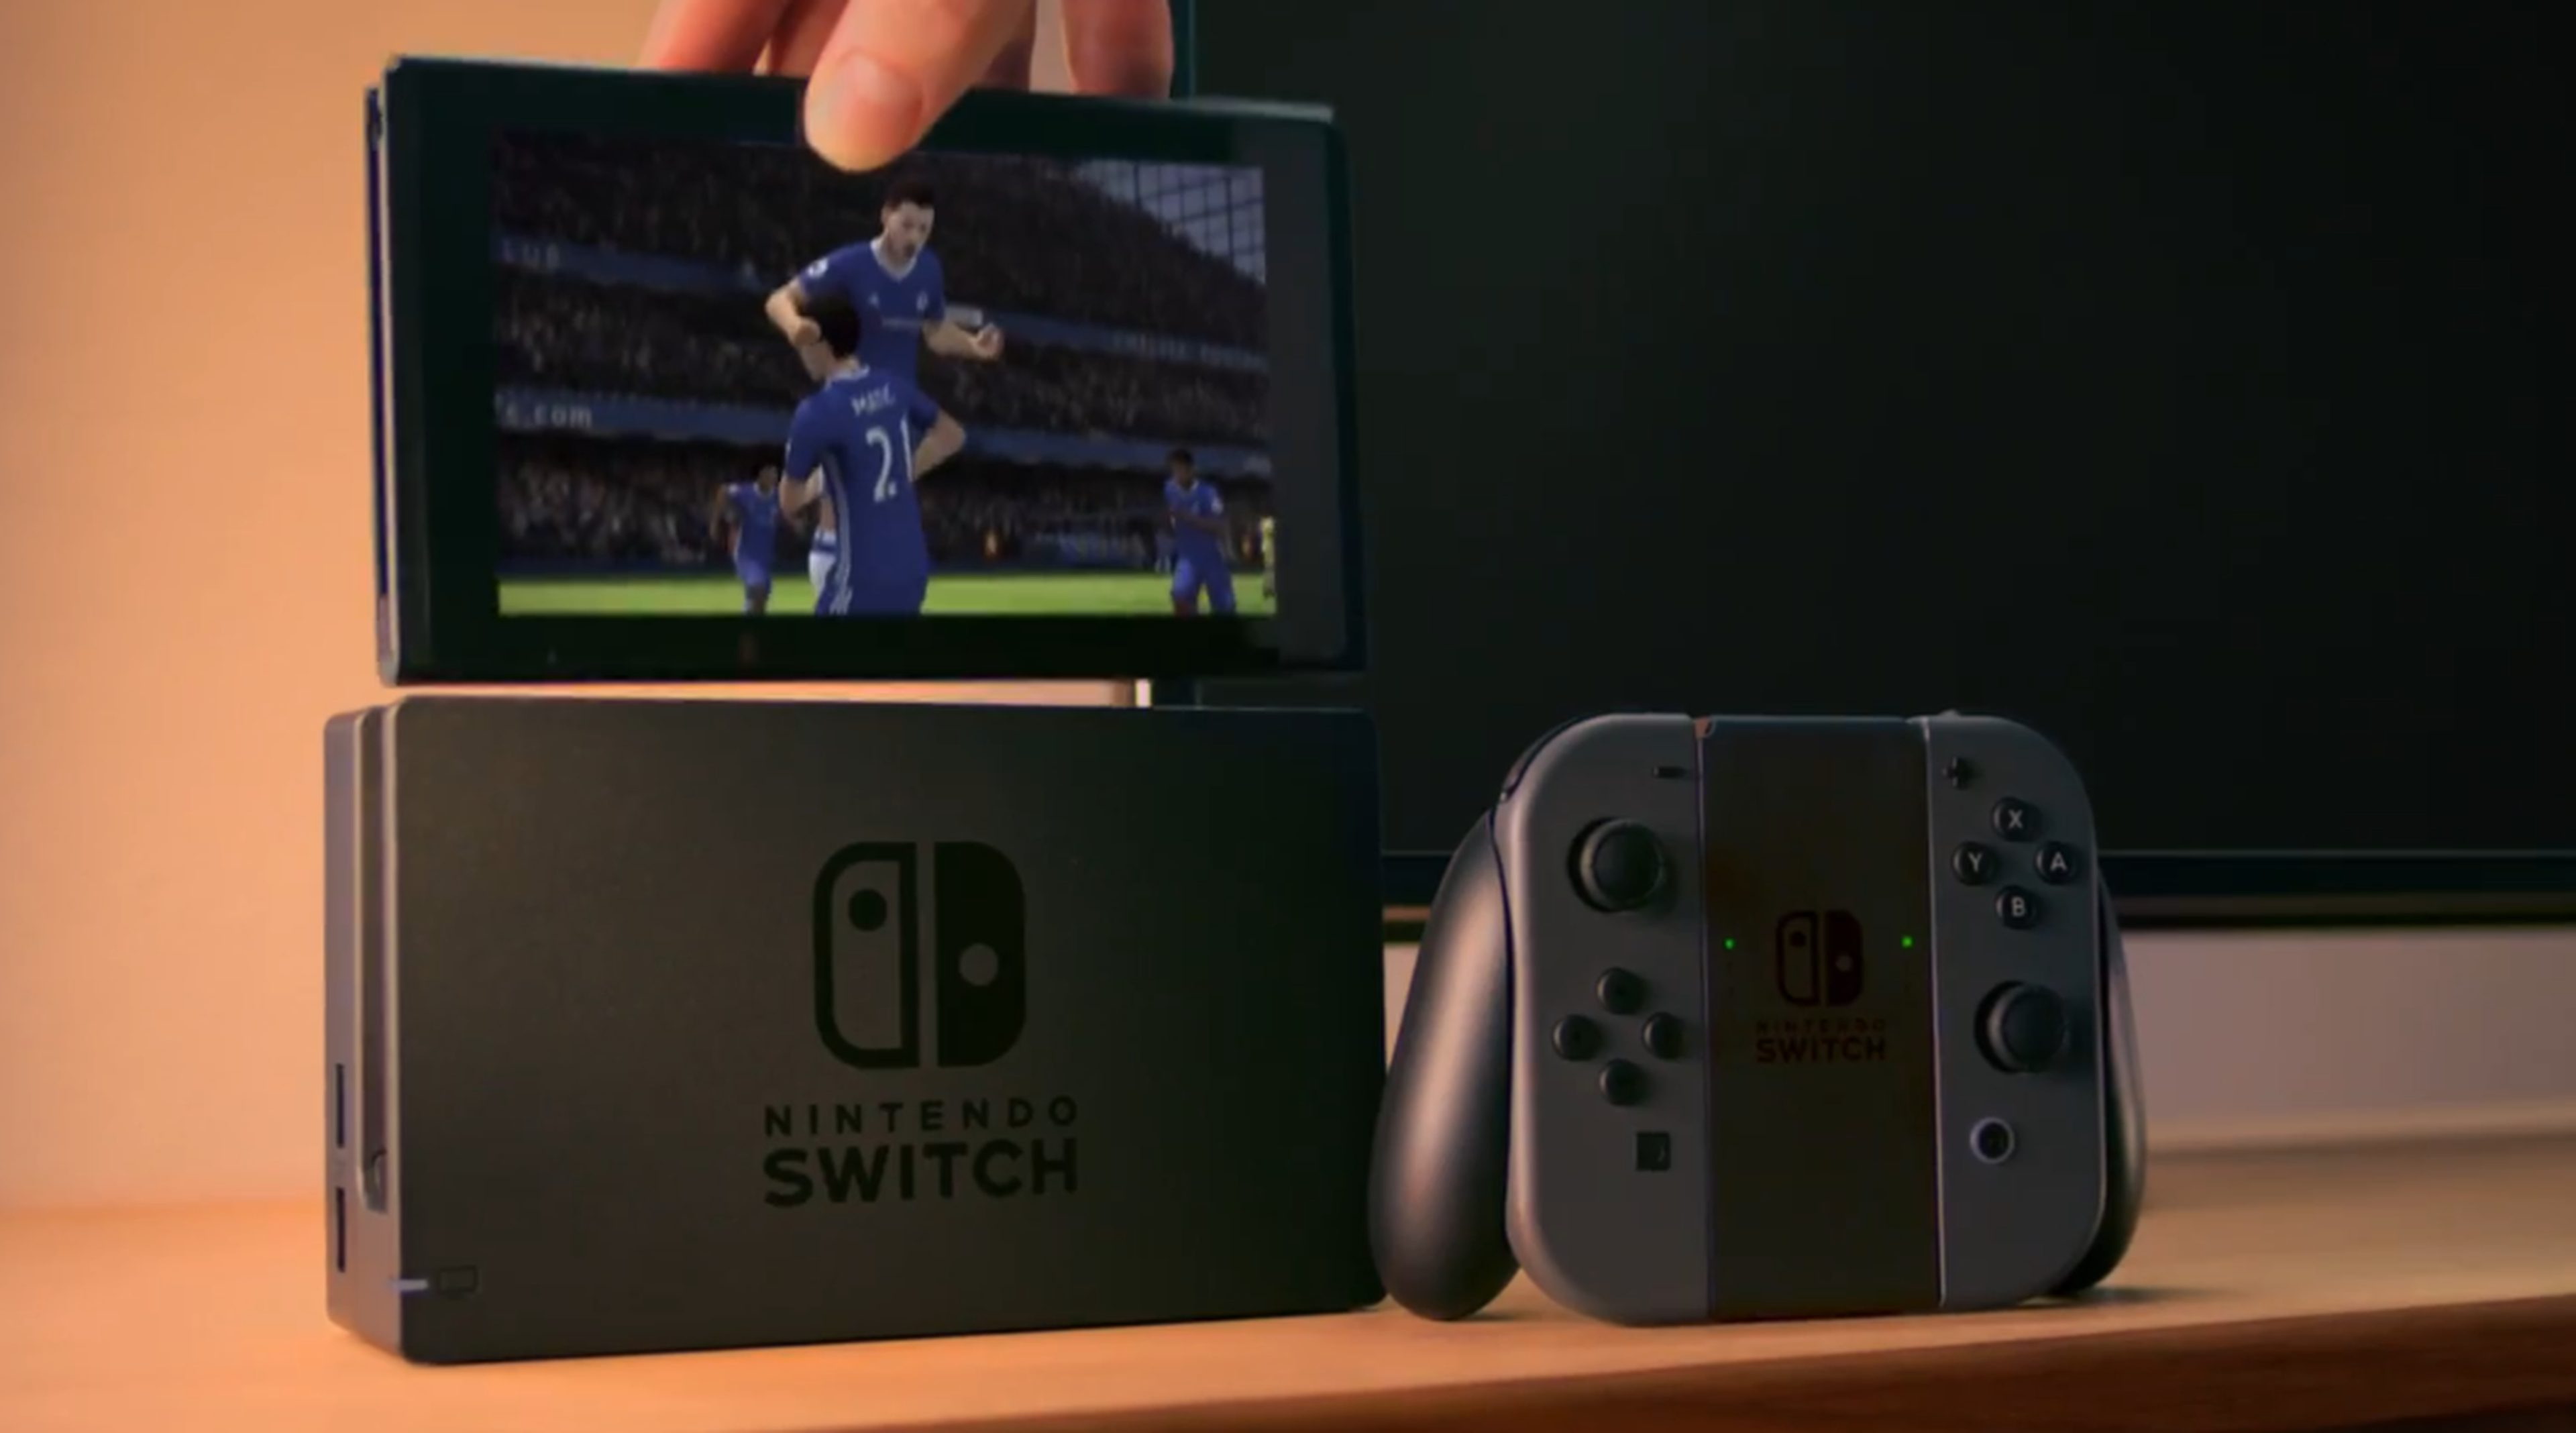 Nintendo Switch - Anuncio de televisión con FIFA